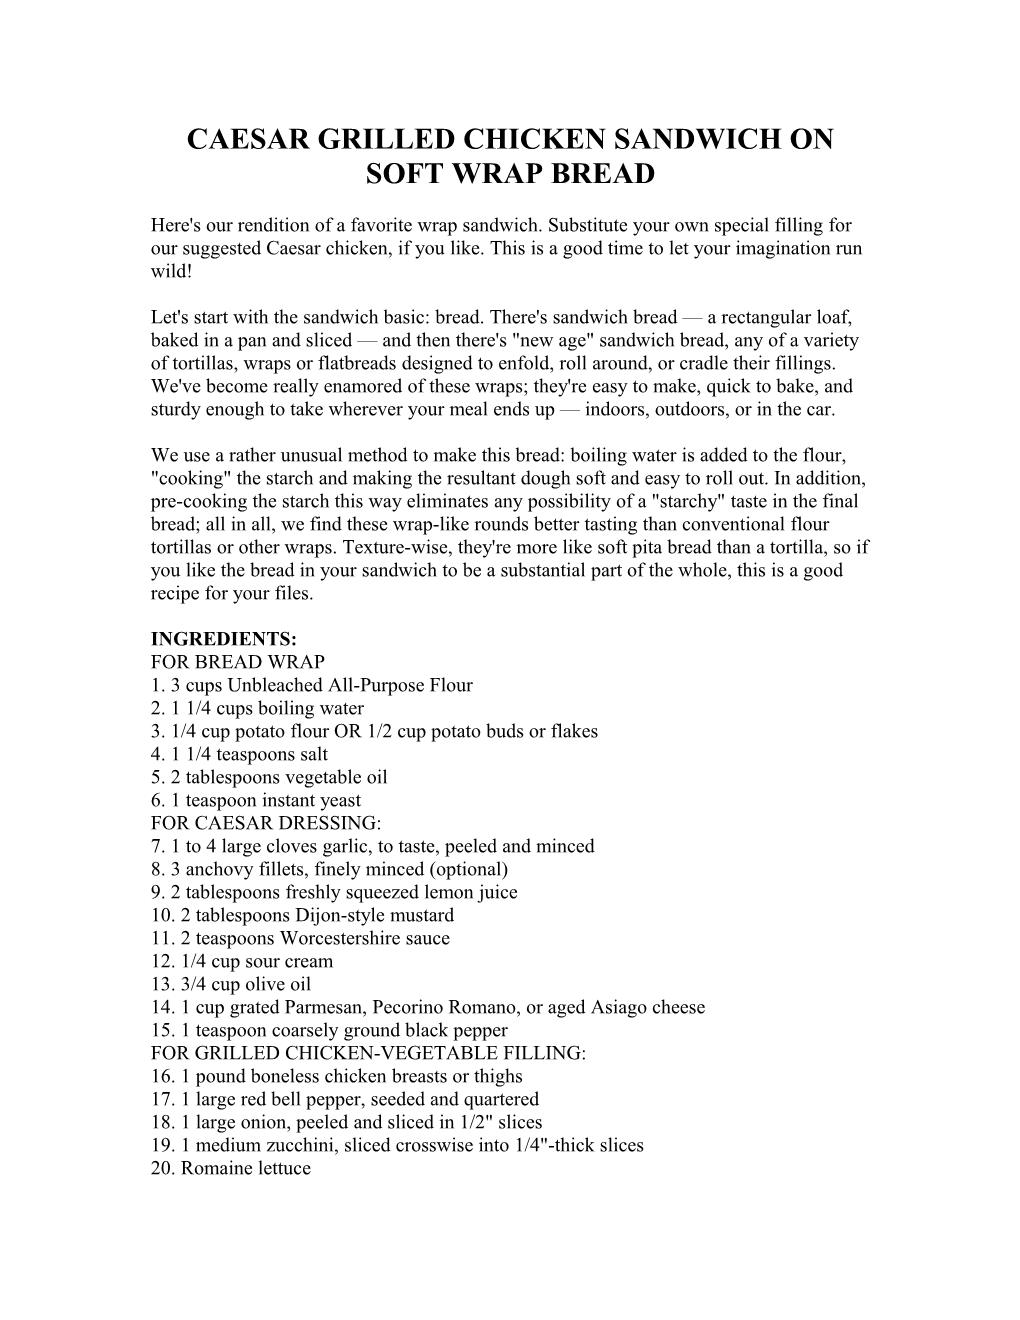 Caesar Grilled Chicken Sandwich on Soft Wrap Bread